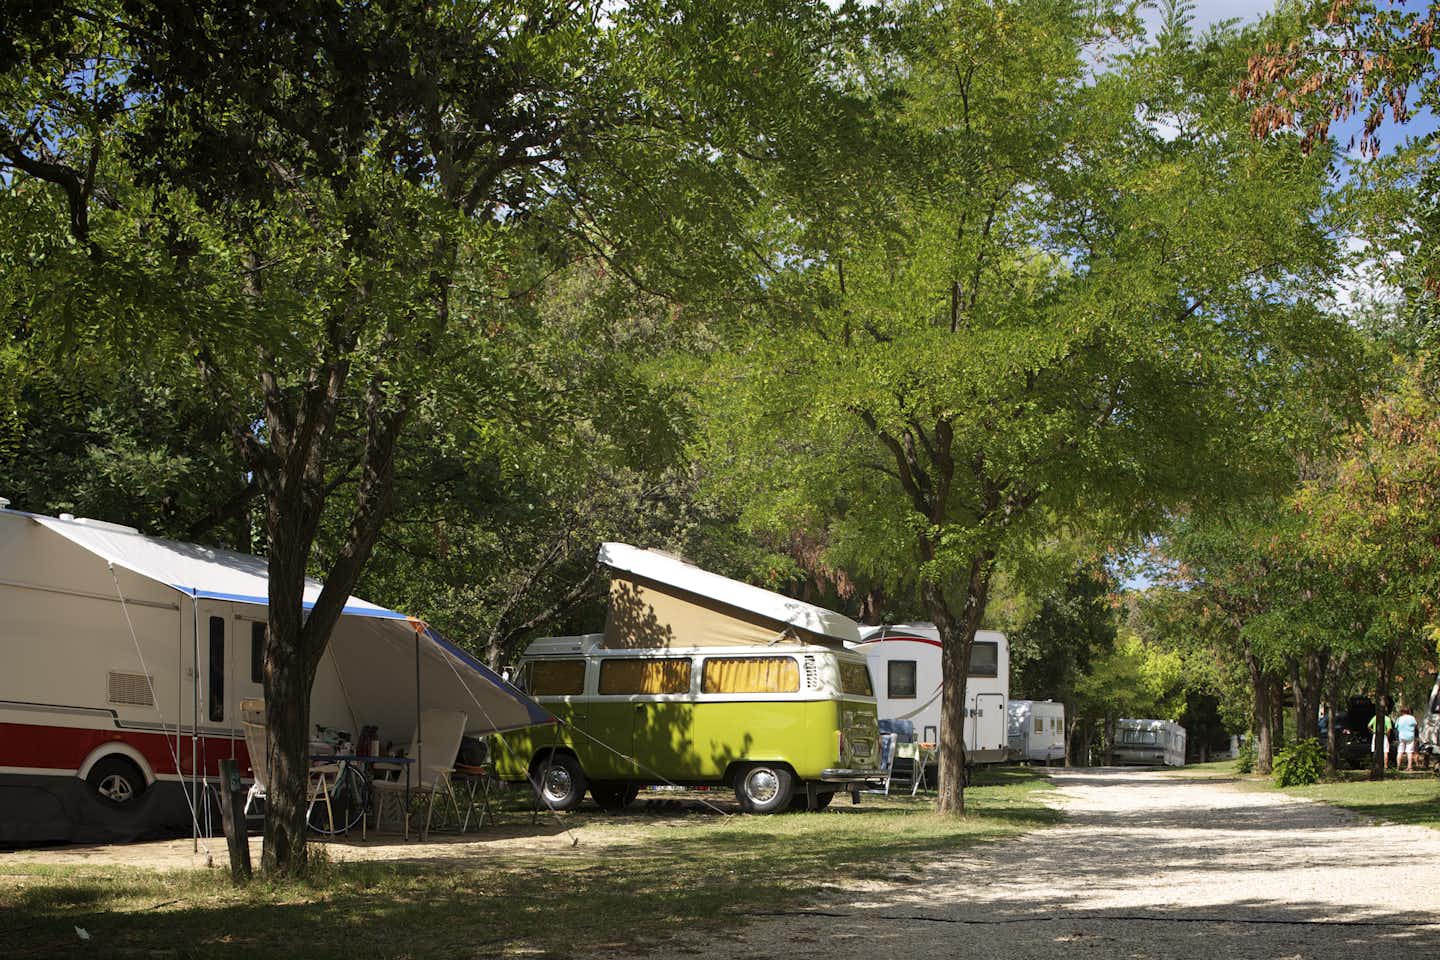 Camping Le Pastory  -  Wohnwagenstellplatz vom Campingplatz zwischen Bäumen